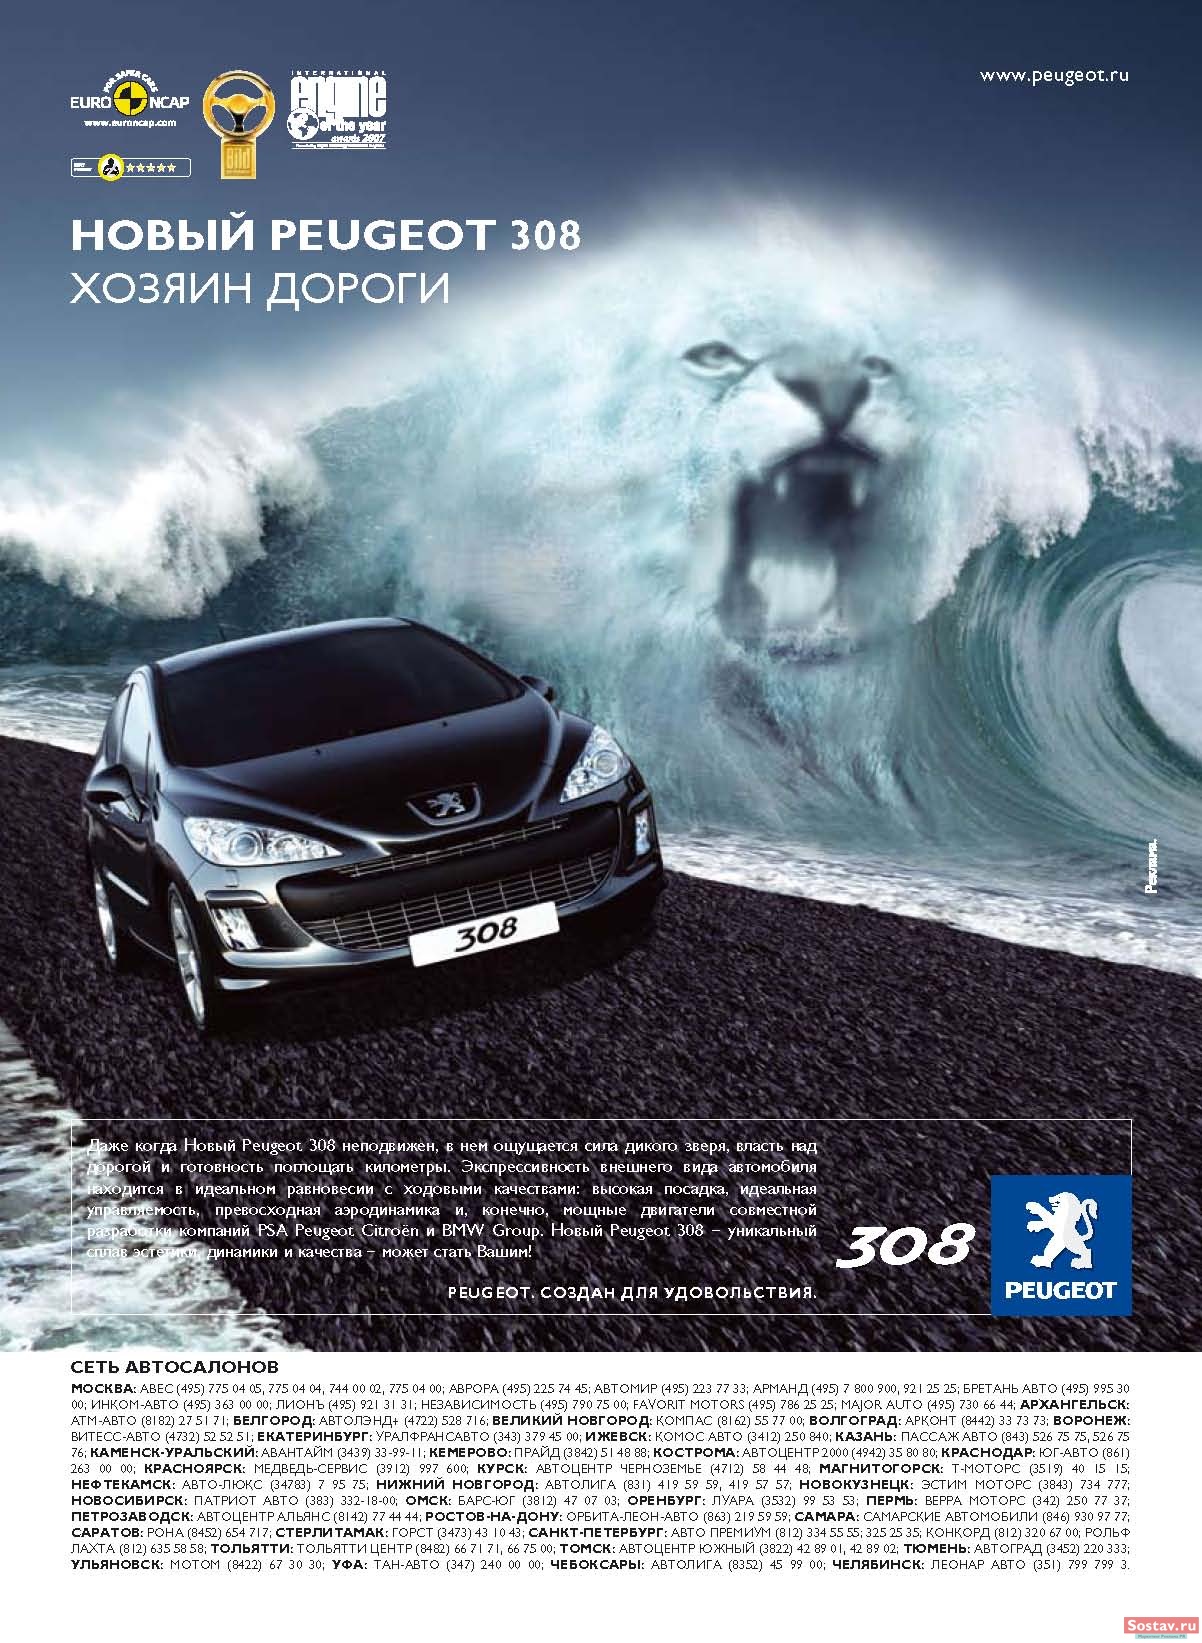 Бутусов рекламирует автомобиль. Пежо 308 реклама 2011. Peugeot 308 2010 реклама. Реклама автомобиля. Реклама на машине.